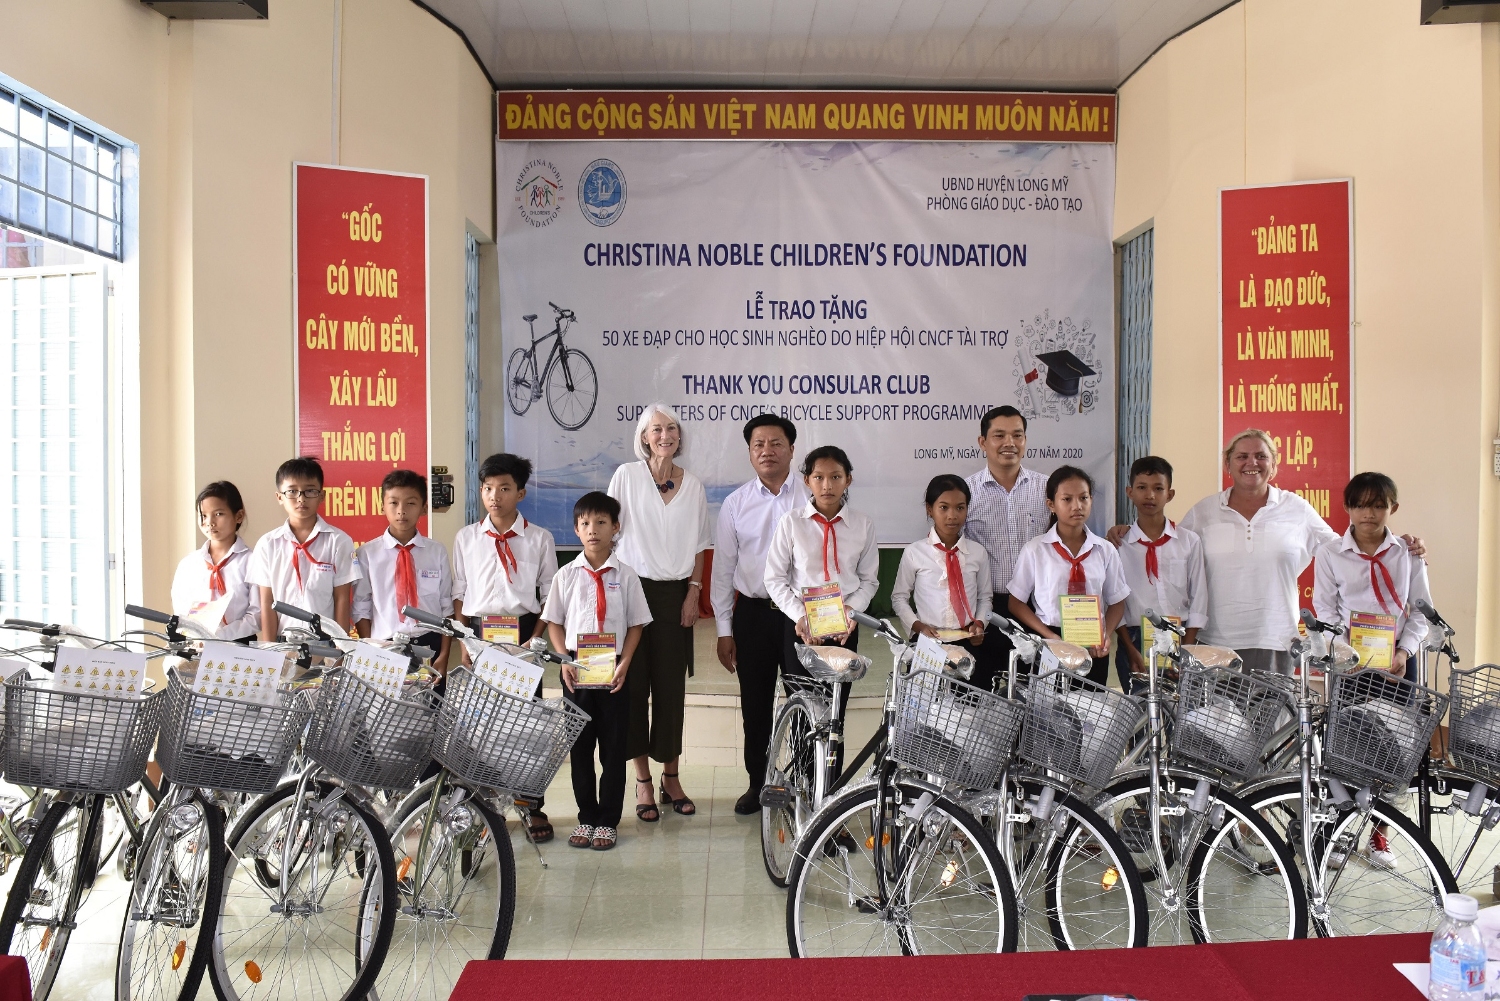 Ông Lê Minh Tuấn - Phó Chủ tịch Liên Hiệp Hậu Giang (thứ 5, từ phải sang) cùng Tổ chức CNCF trao xe đạp cho học sinh nghèo huyện Long Mỹ.